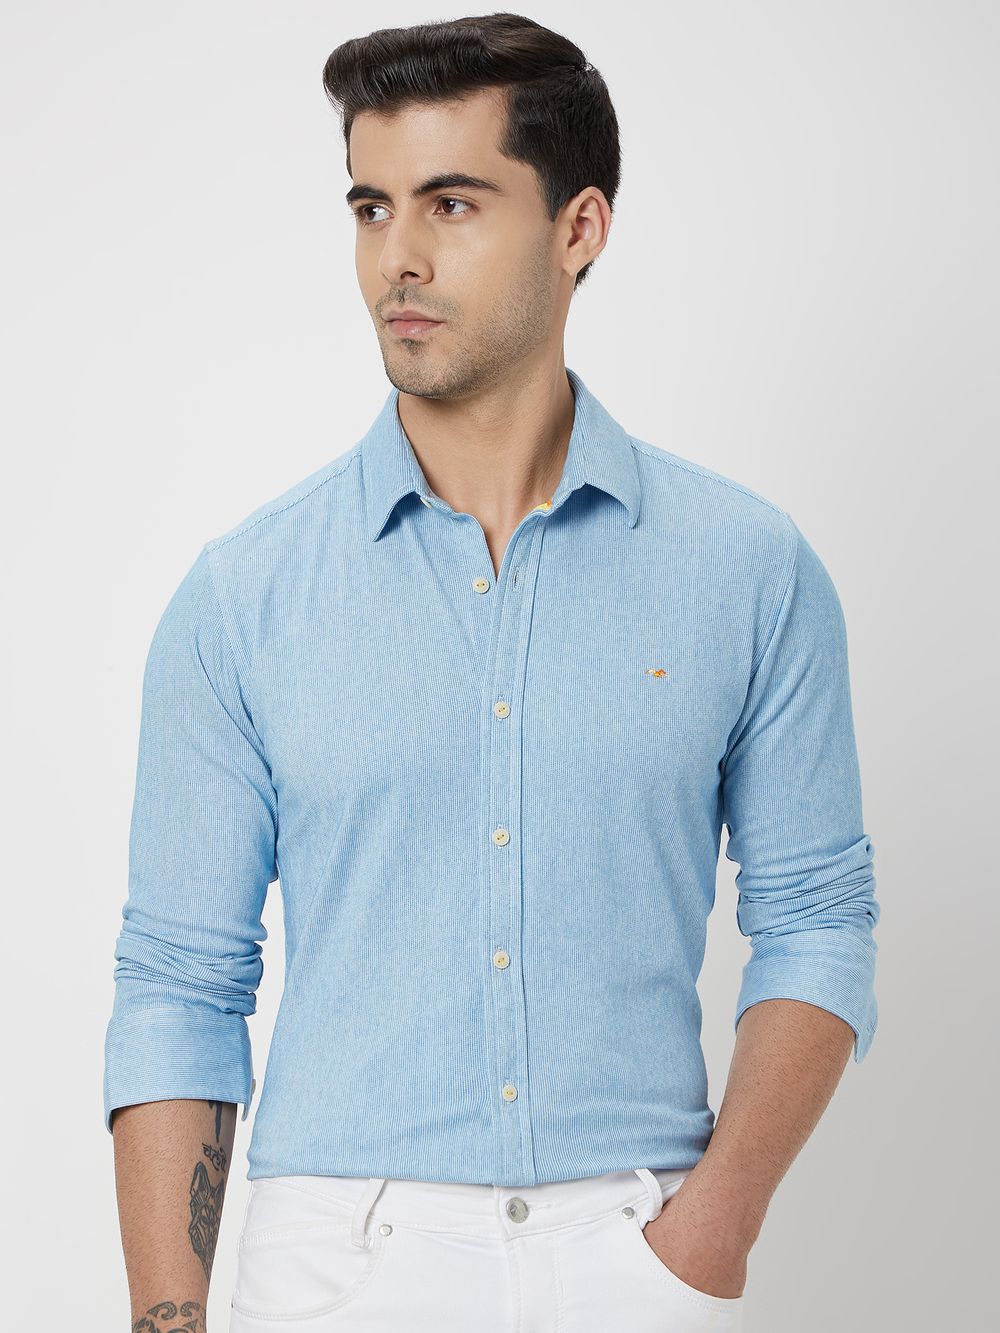 Blue & White Pin Stripe Shirt